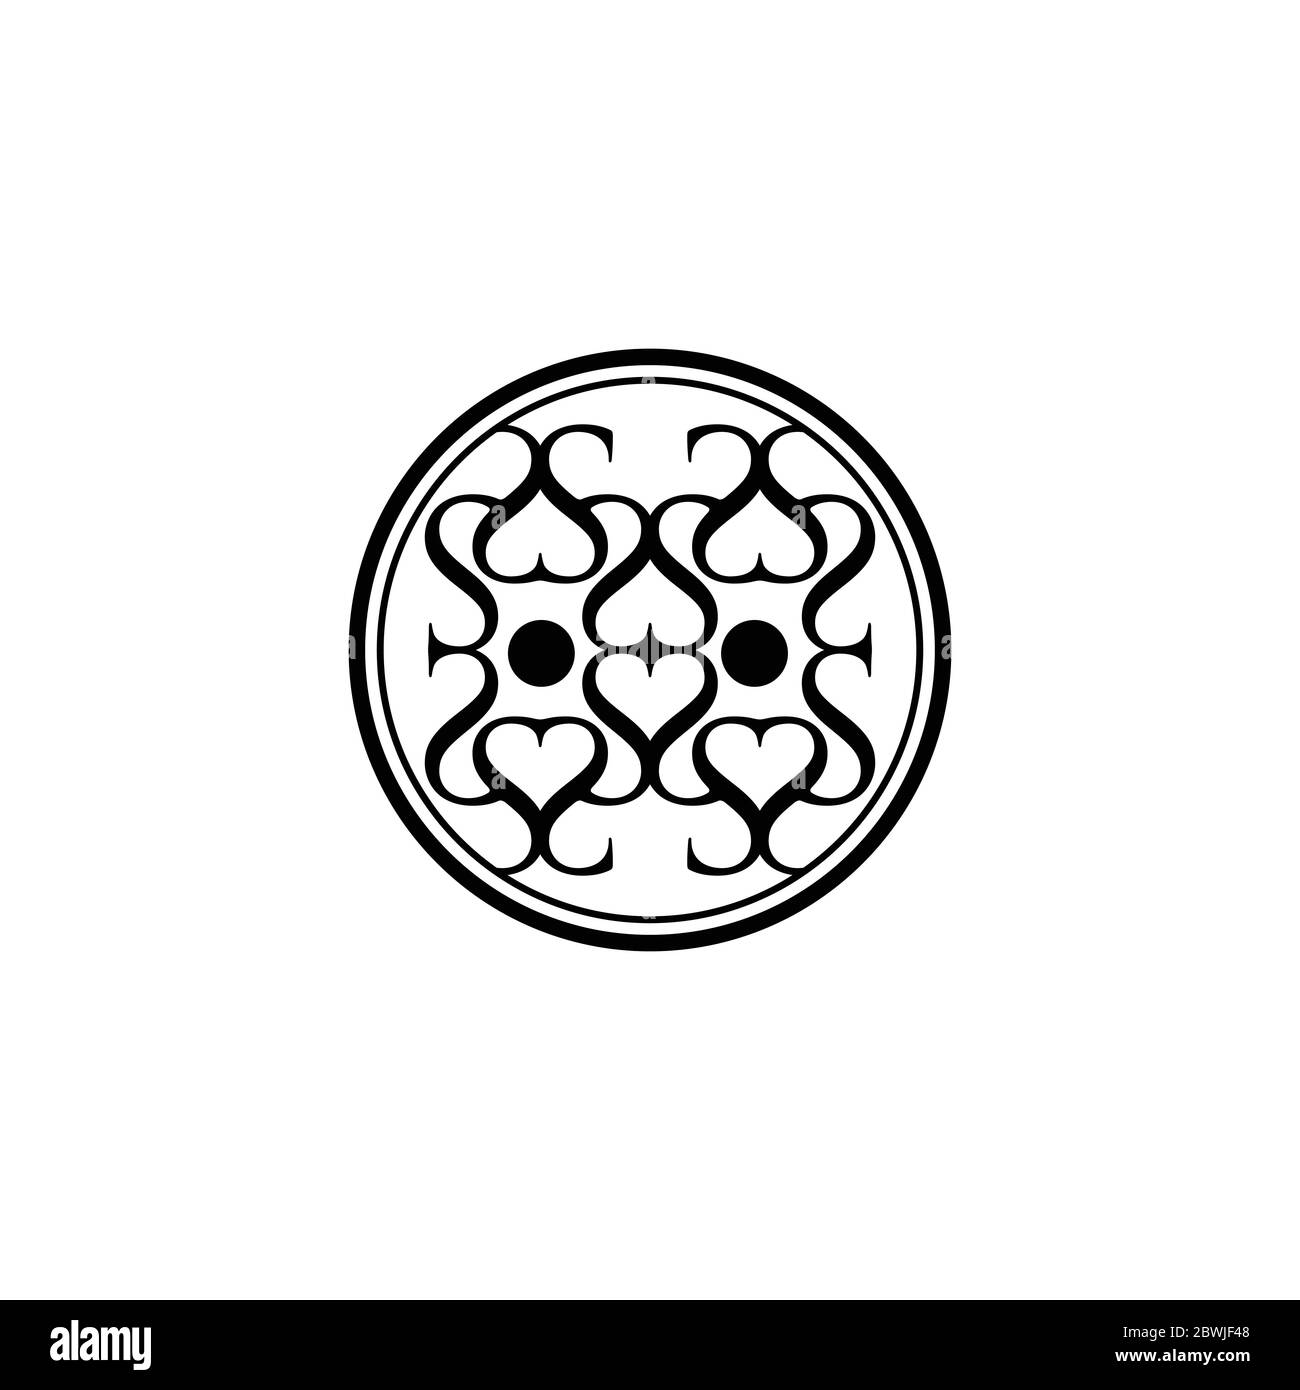 Abstrakt ethnischen geometrischen Symbol in Kreisform Vektor-Design-Illustration isoliert auf einem weißen Hintergrund Stock Vektor